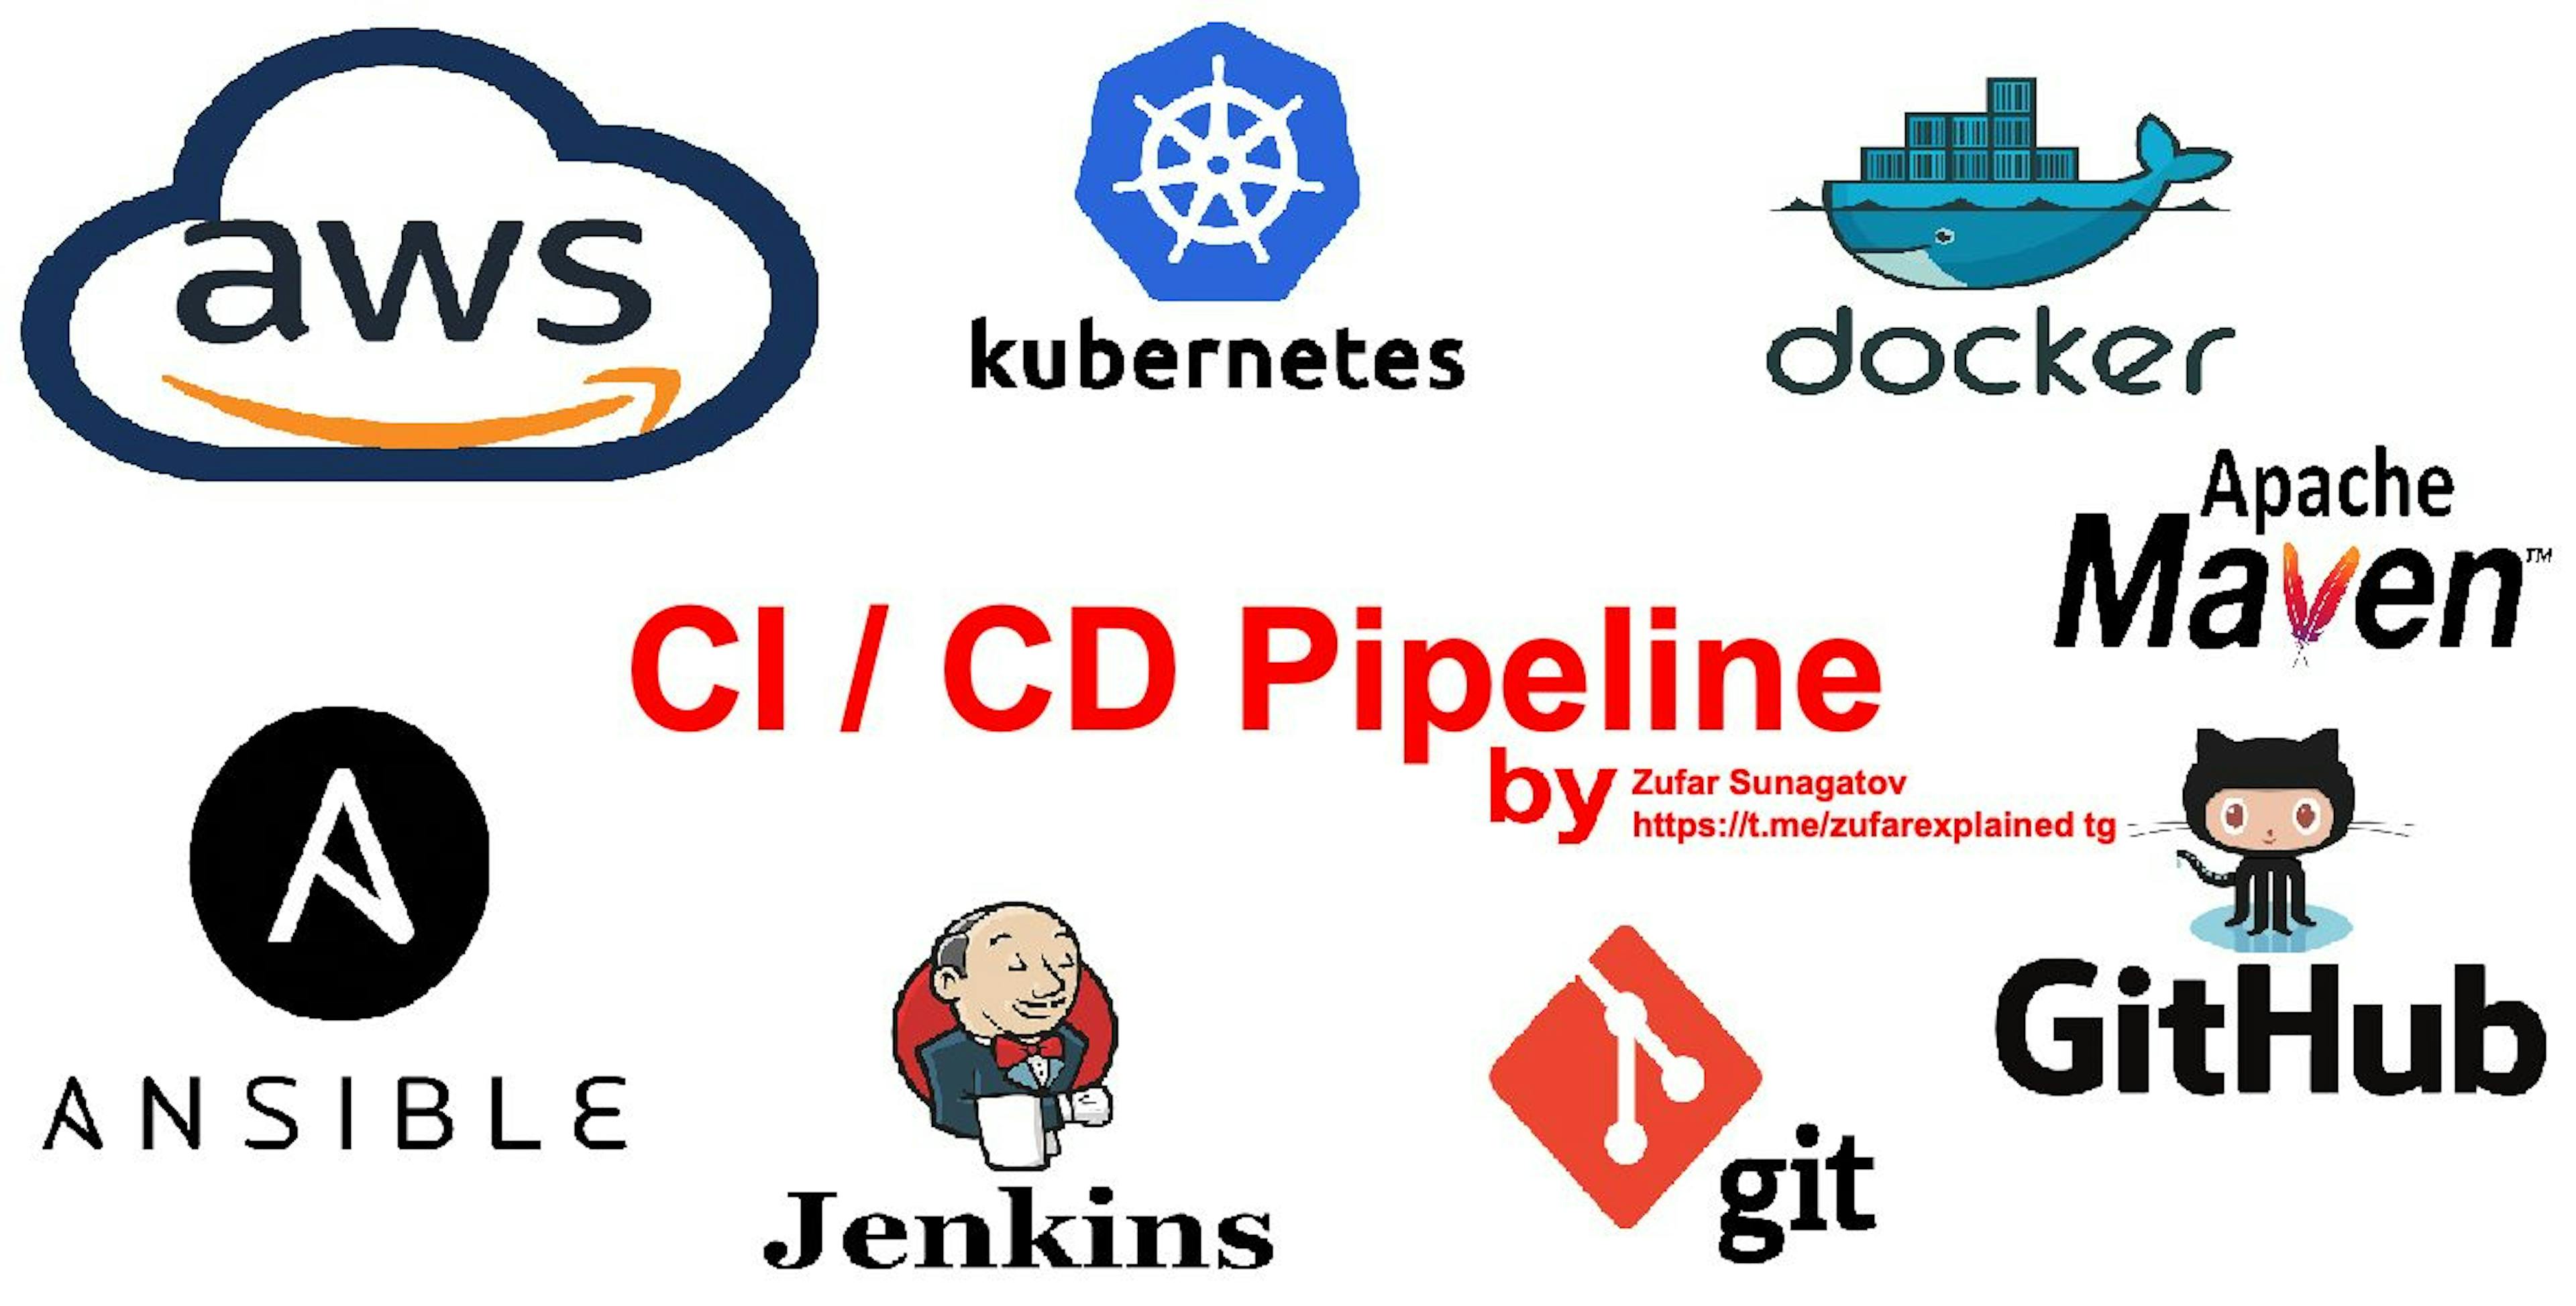 featured image - Création d'un pipeline CI/CD avec AWS, K8S, Docker, Ansible, Git, Github, Apache Maven et Jenkins